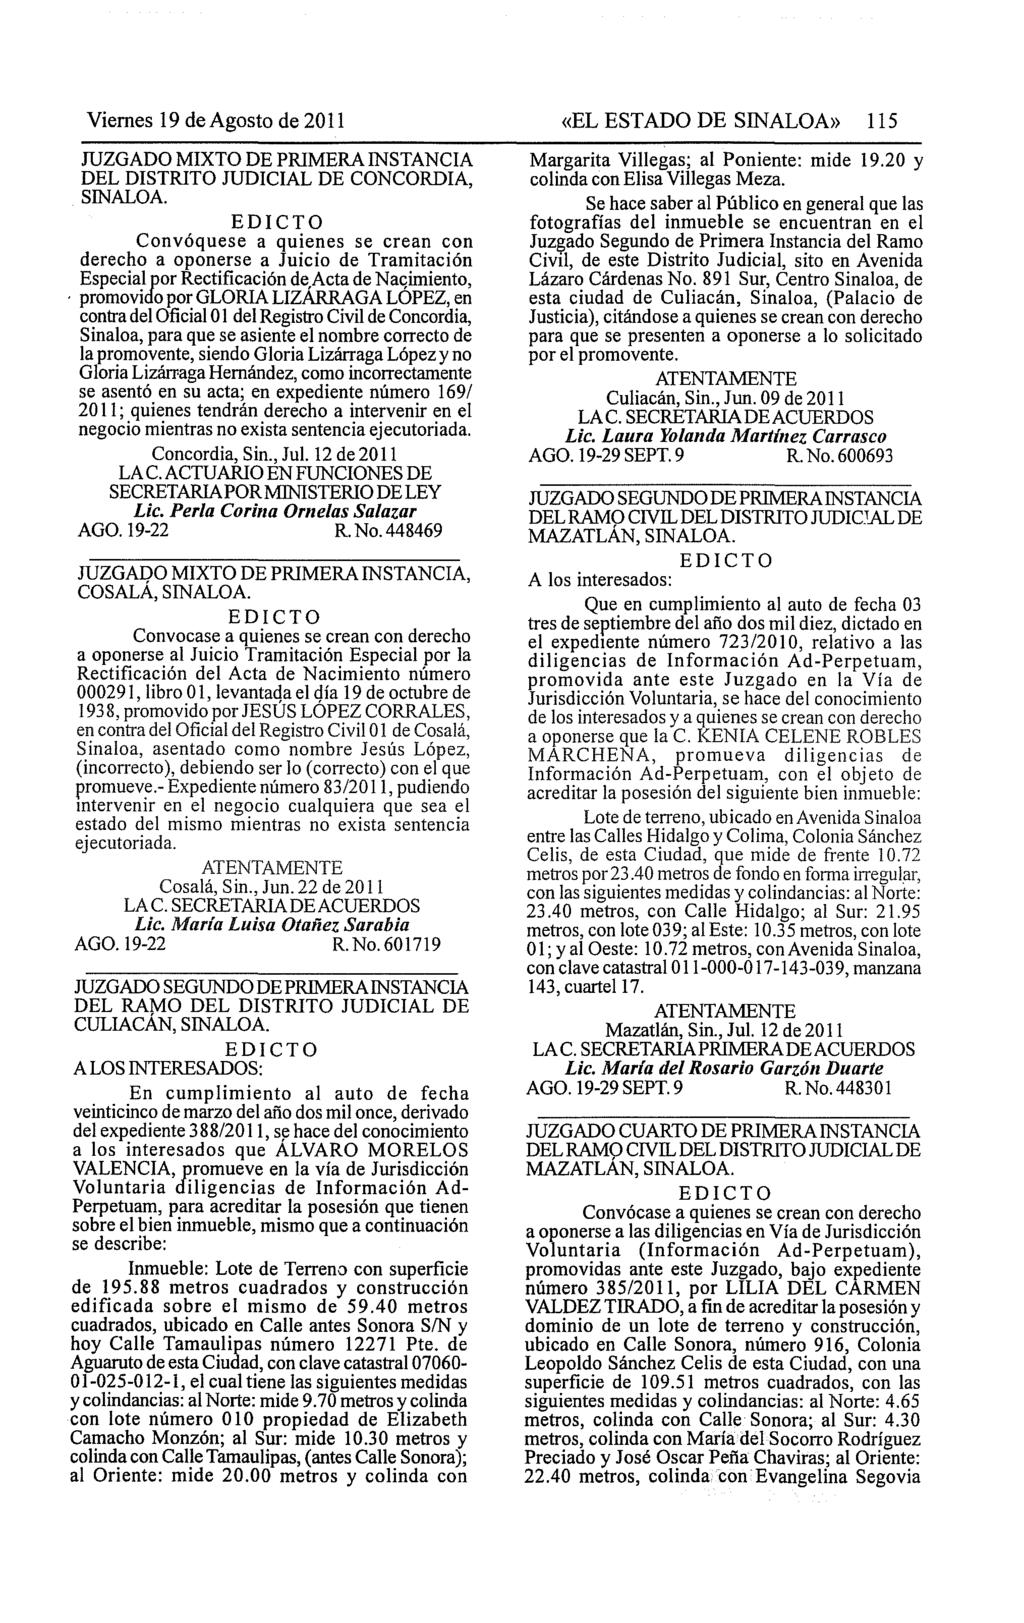 Viernes 19 de Agosto de 2011 JUZGADO MIXTO DE PRIMERA INSTANCIA DEL DISTRITO JUDICIAL DE CONCORDIA, SINALOA.